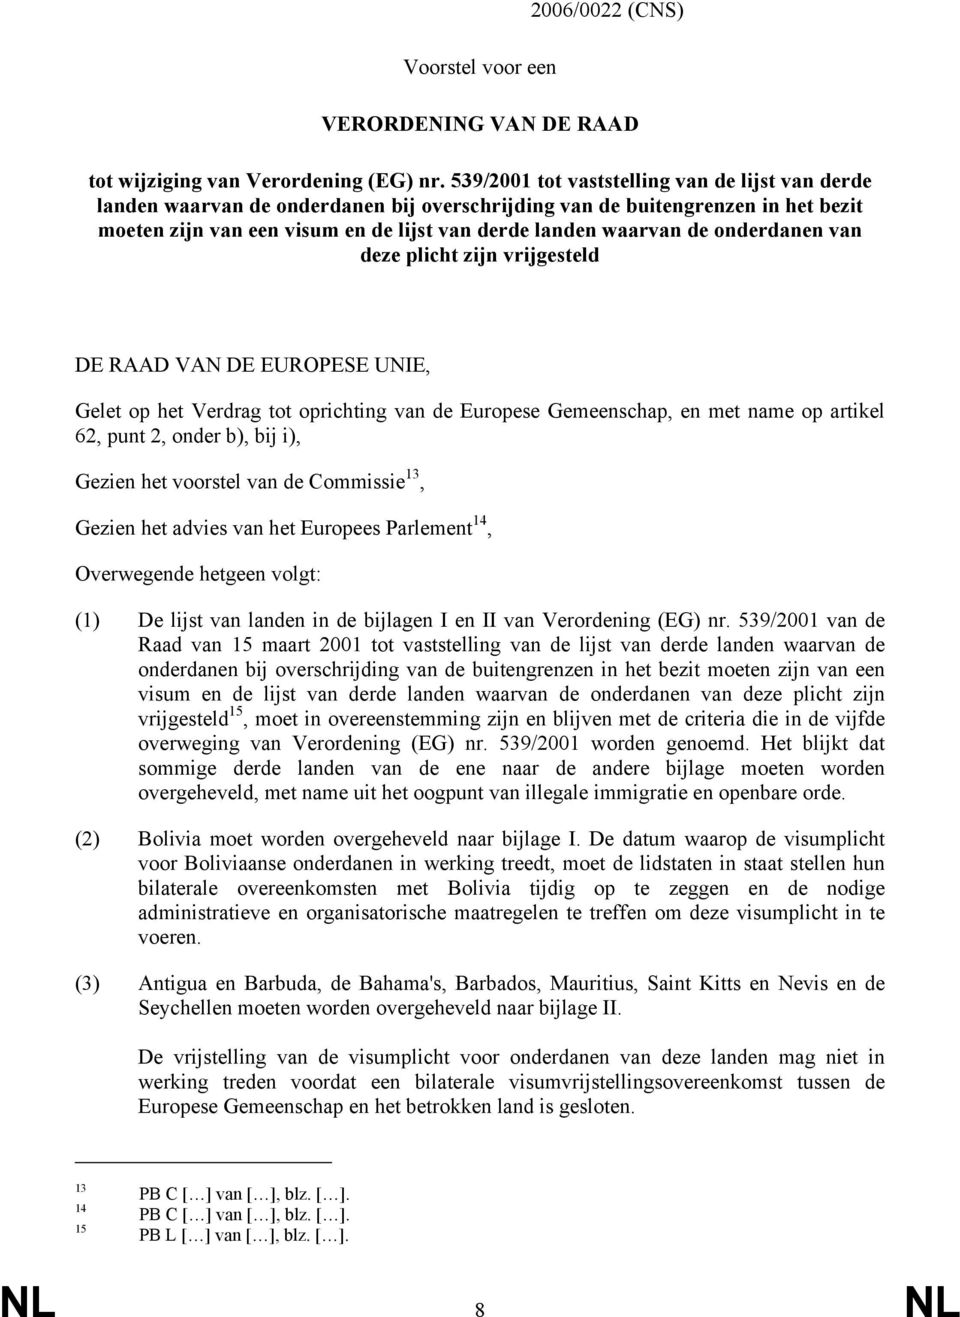 onderdanen van deze plicht zijn vrijgesteld DE RAAD VAN DE EUROPESE UNIE, Gelet op het Verdrag tot oprichting van de Europese Gemeenschap, en met name op artikel 62, punt 2, onder b), bij i), Gezien